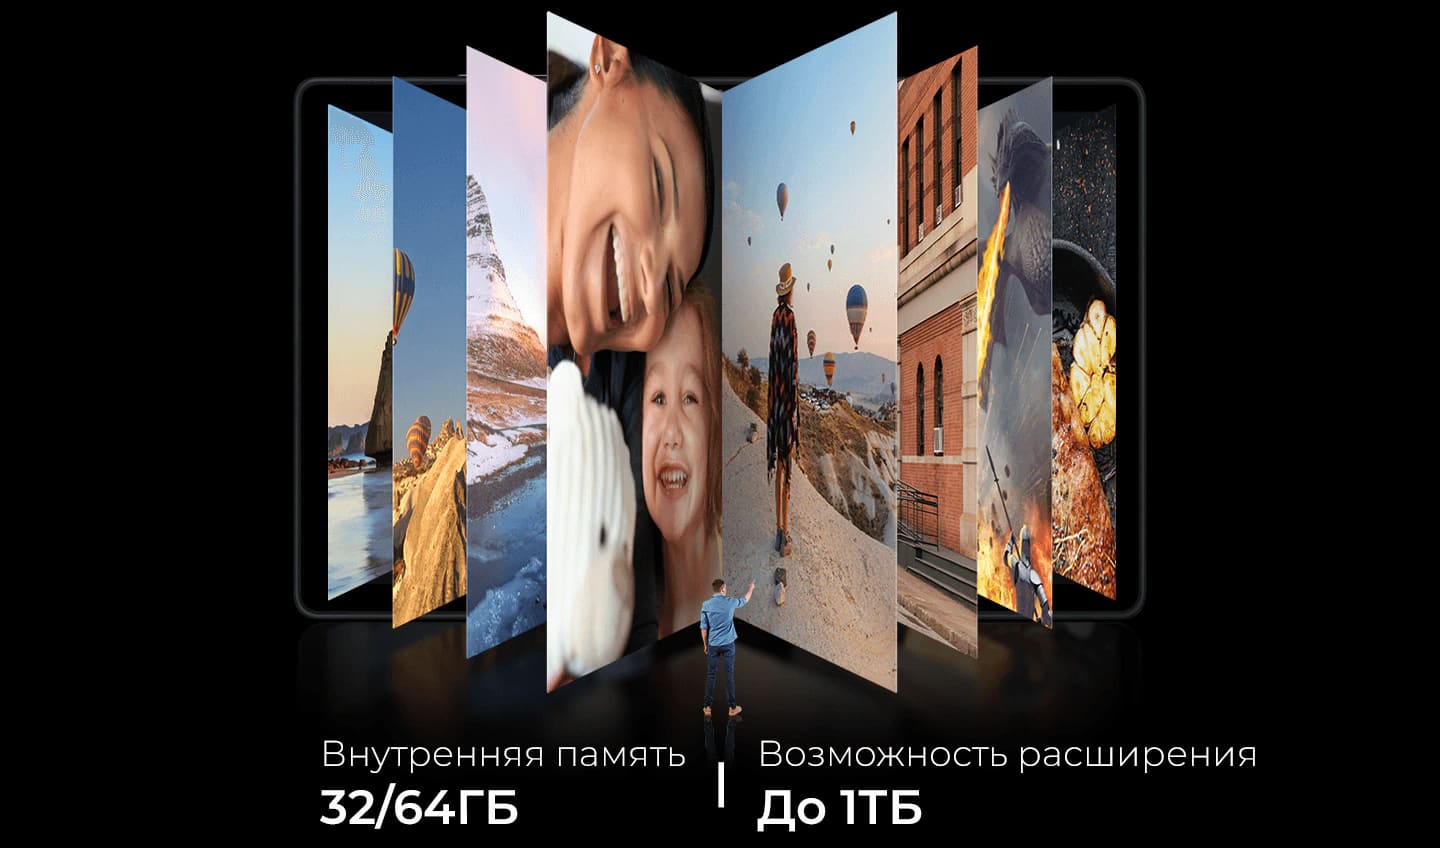 Samsung Galaxy Tab A7 10.4 LTE SM-T505, 64Gb Silver